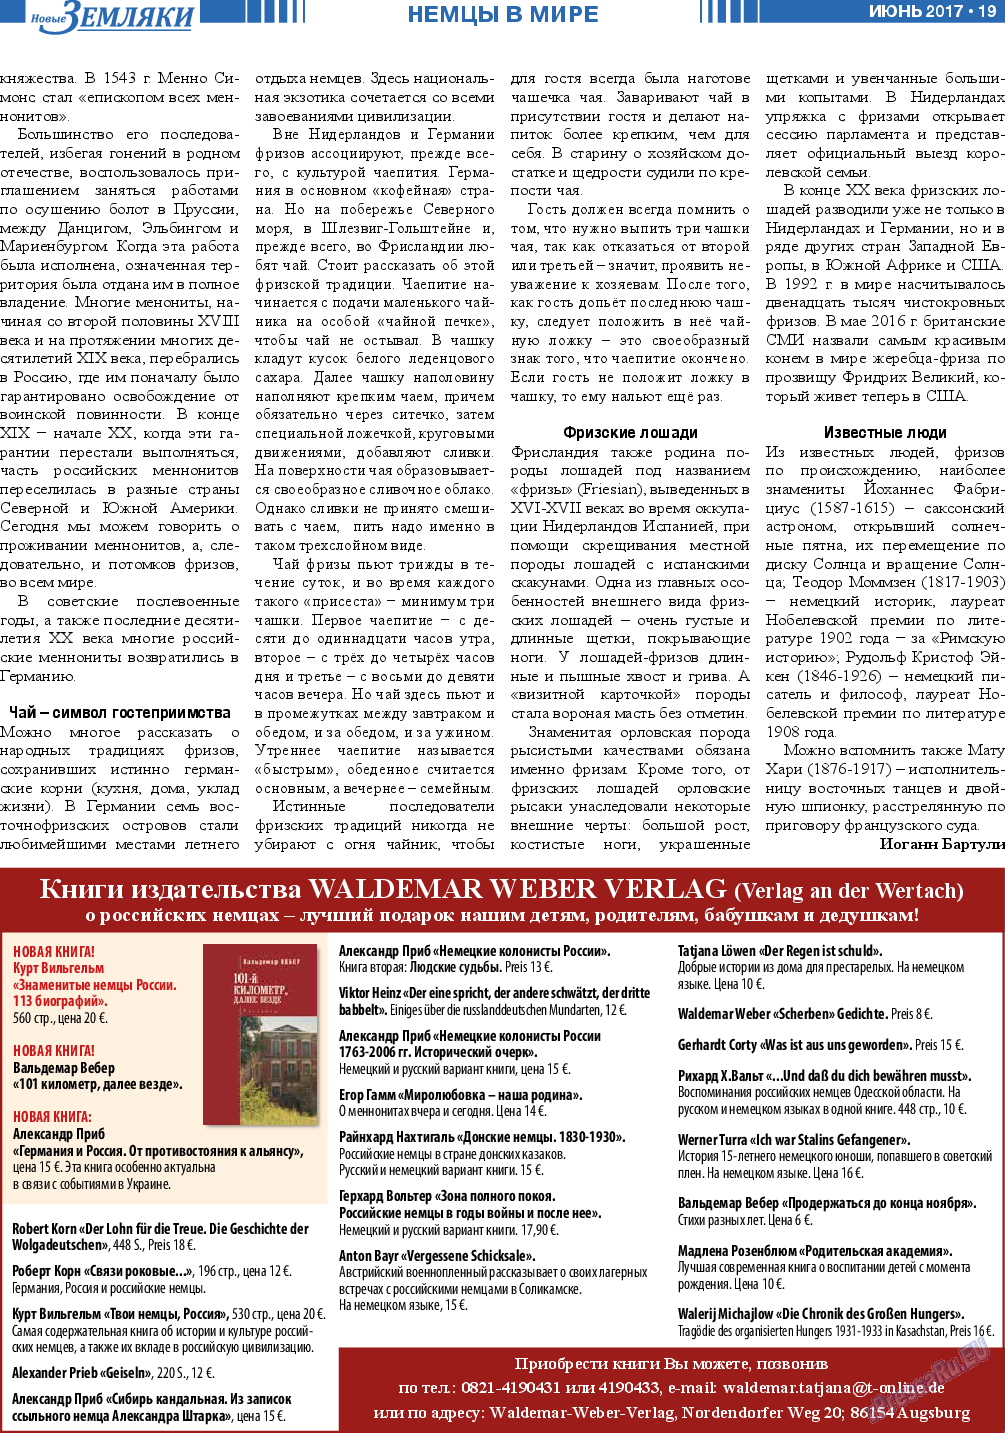 Новые Земляки, газета. 2017 №6 стр.19